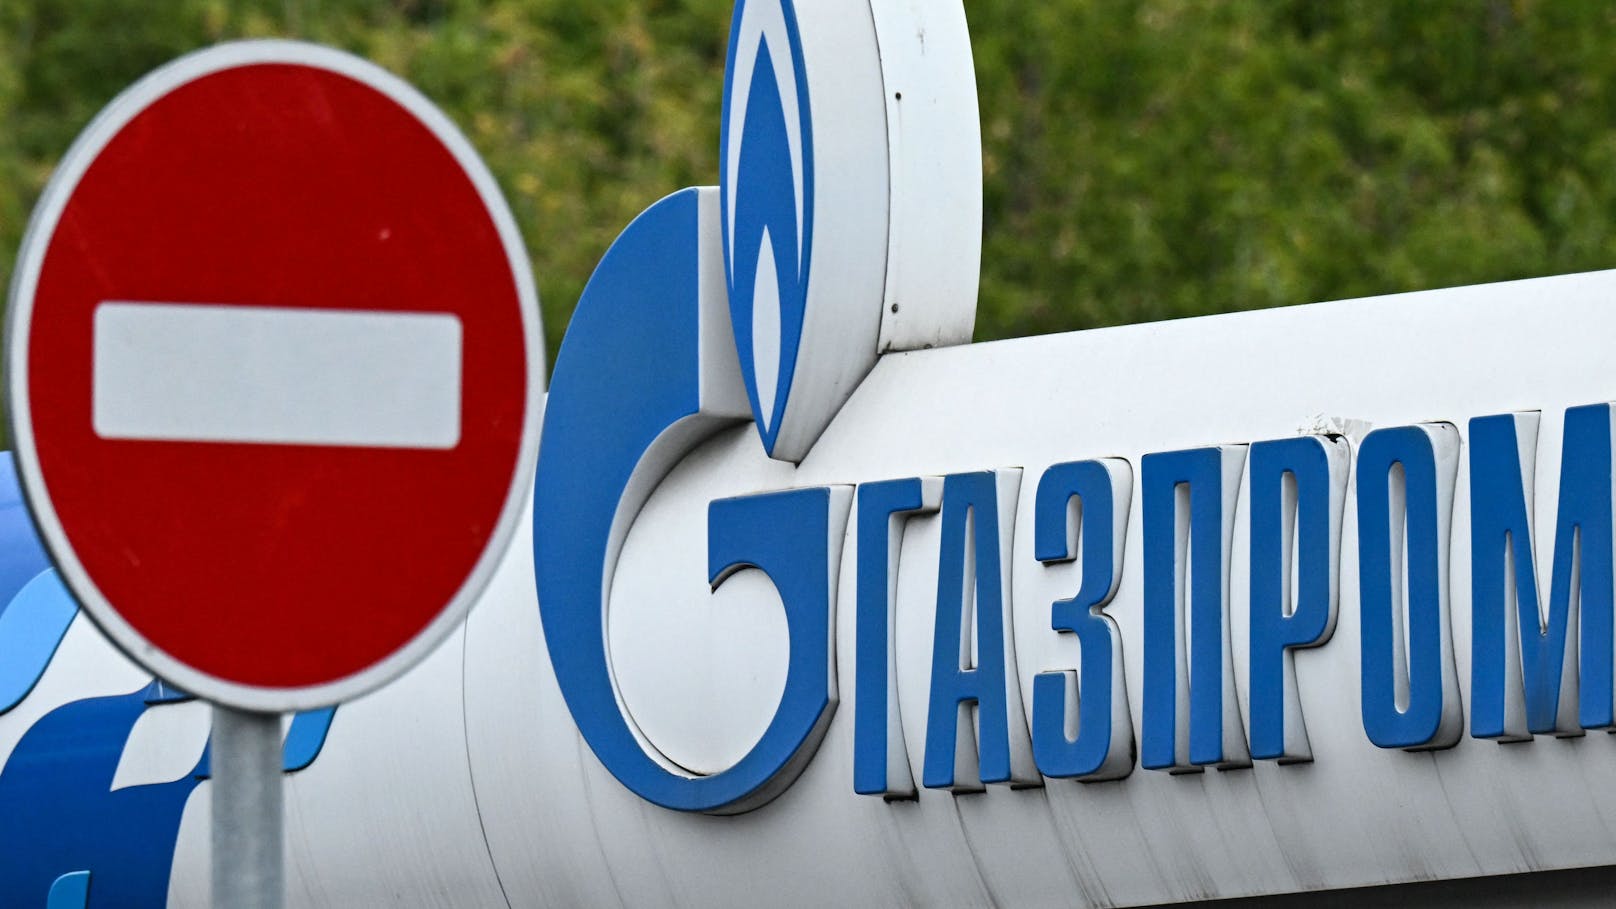 Vorausgegangene Lieferstopps hatte Gazprom jeweils mit Wartungsarbeiten begründet.